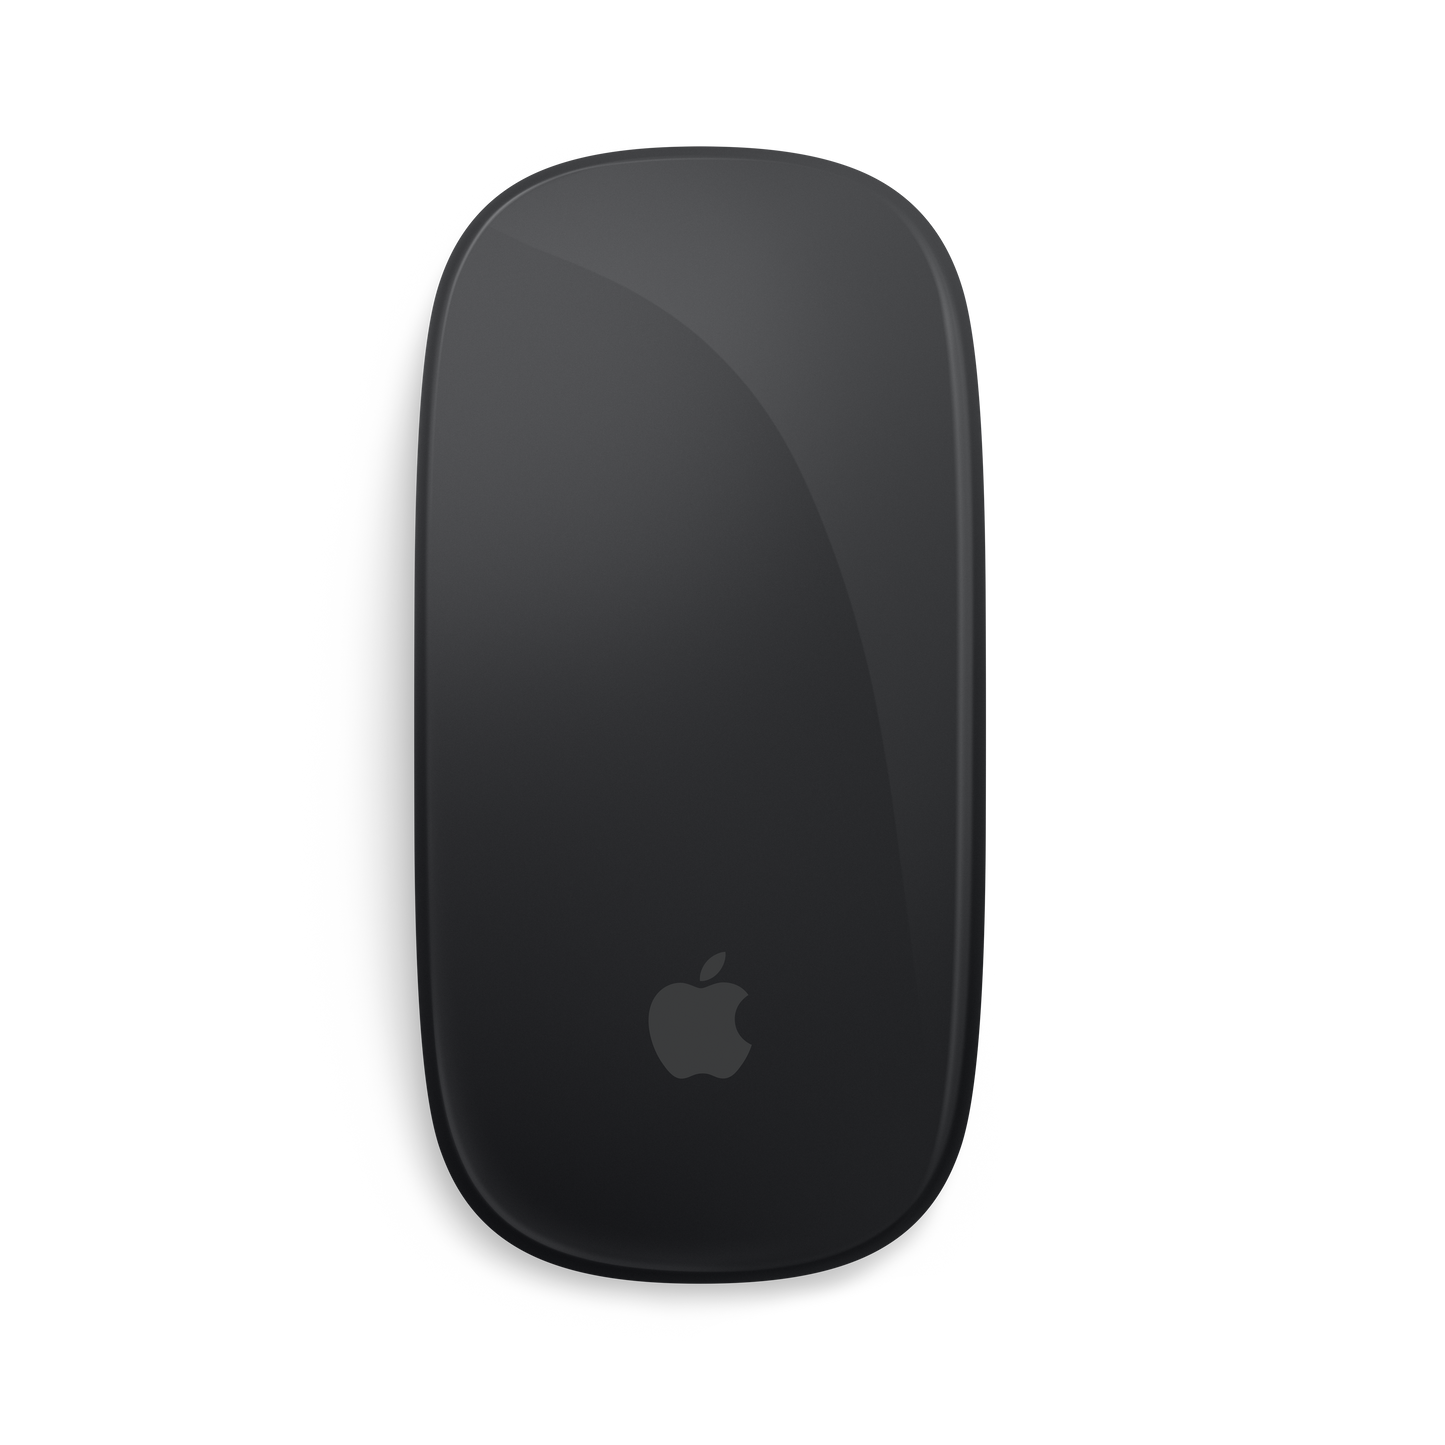 Magic Mouse - Surface Multi-Touch - Noir